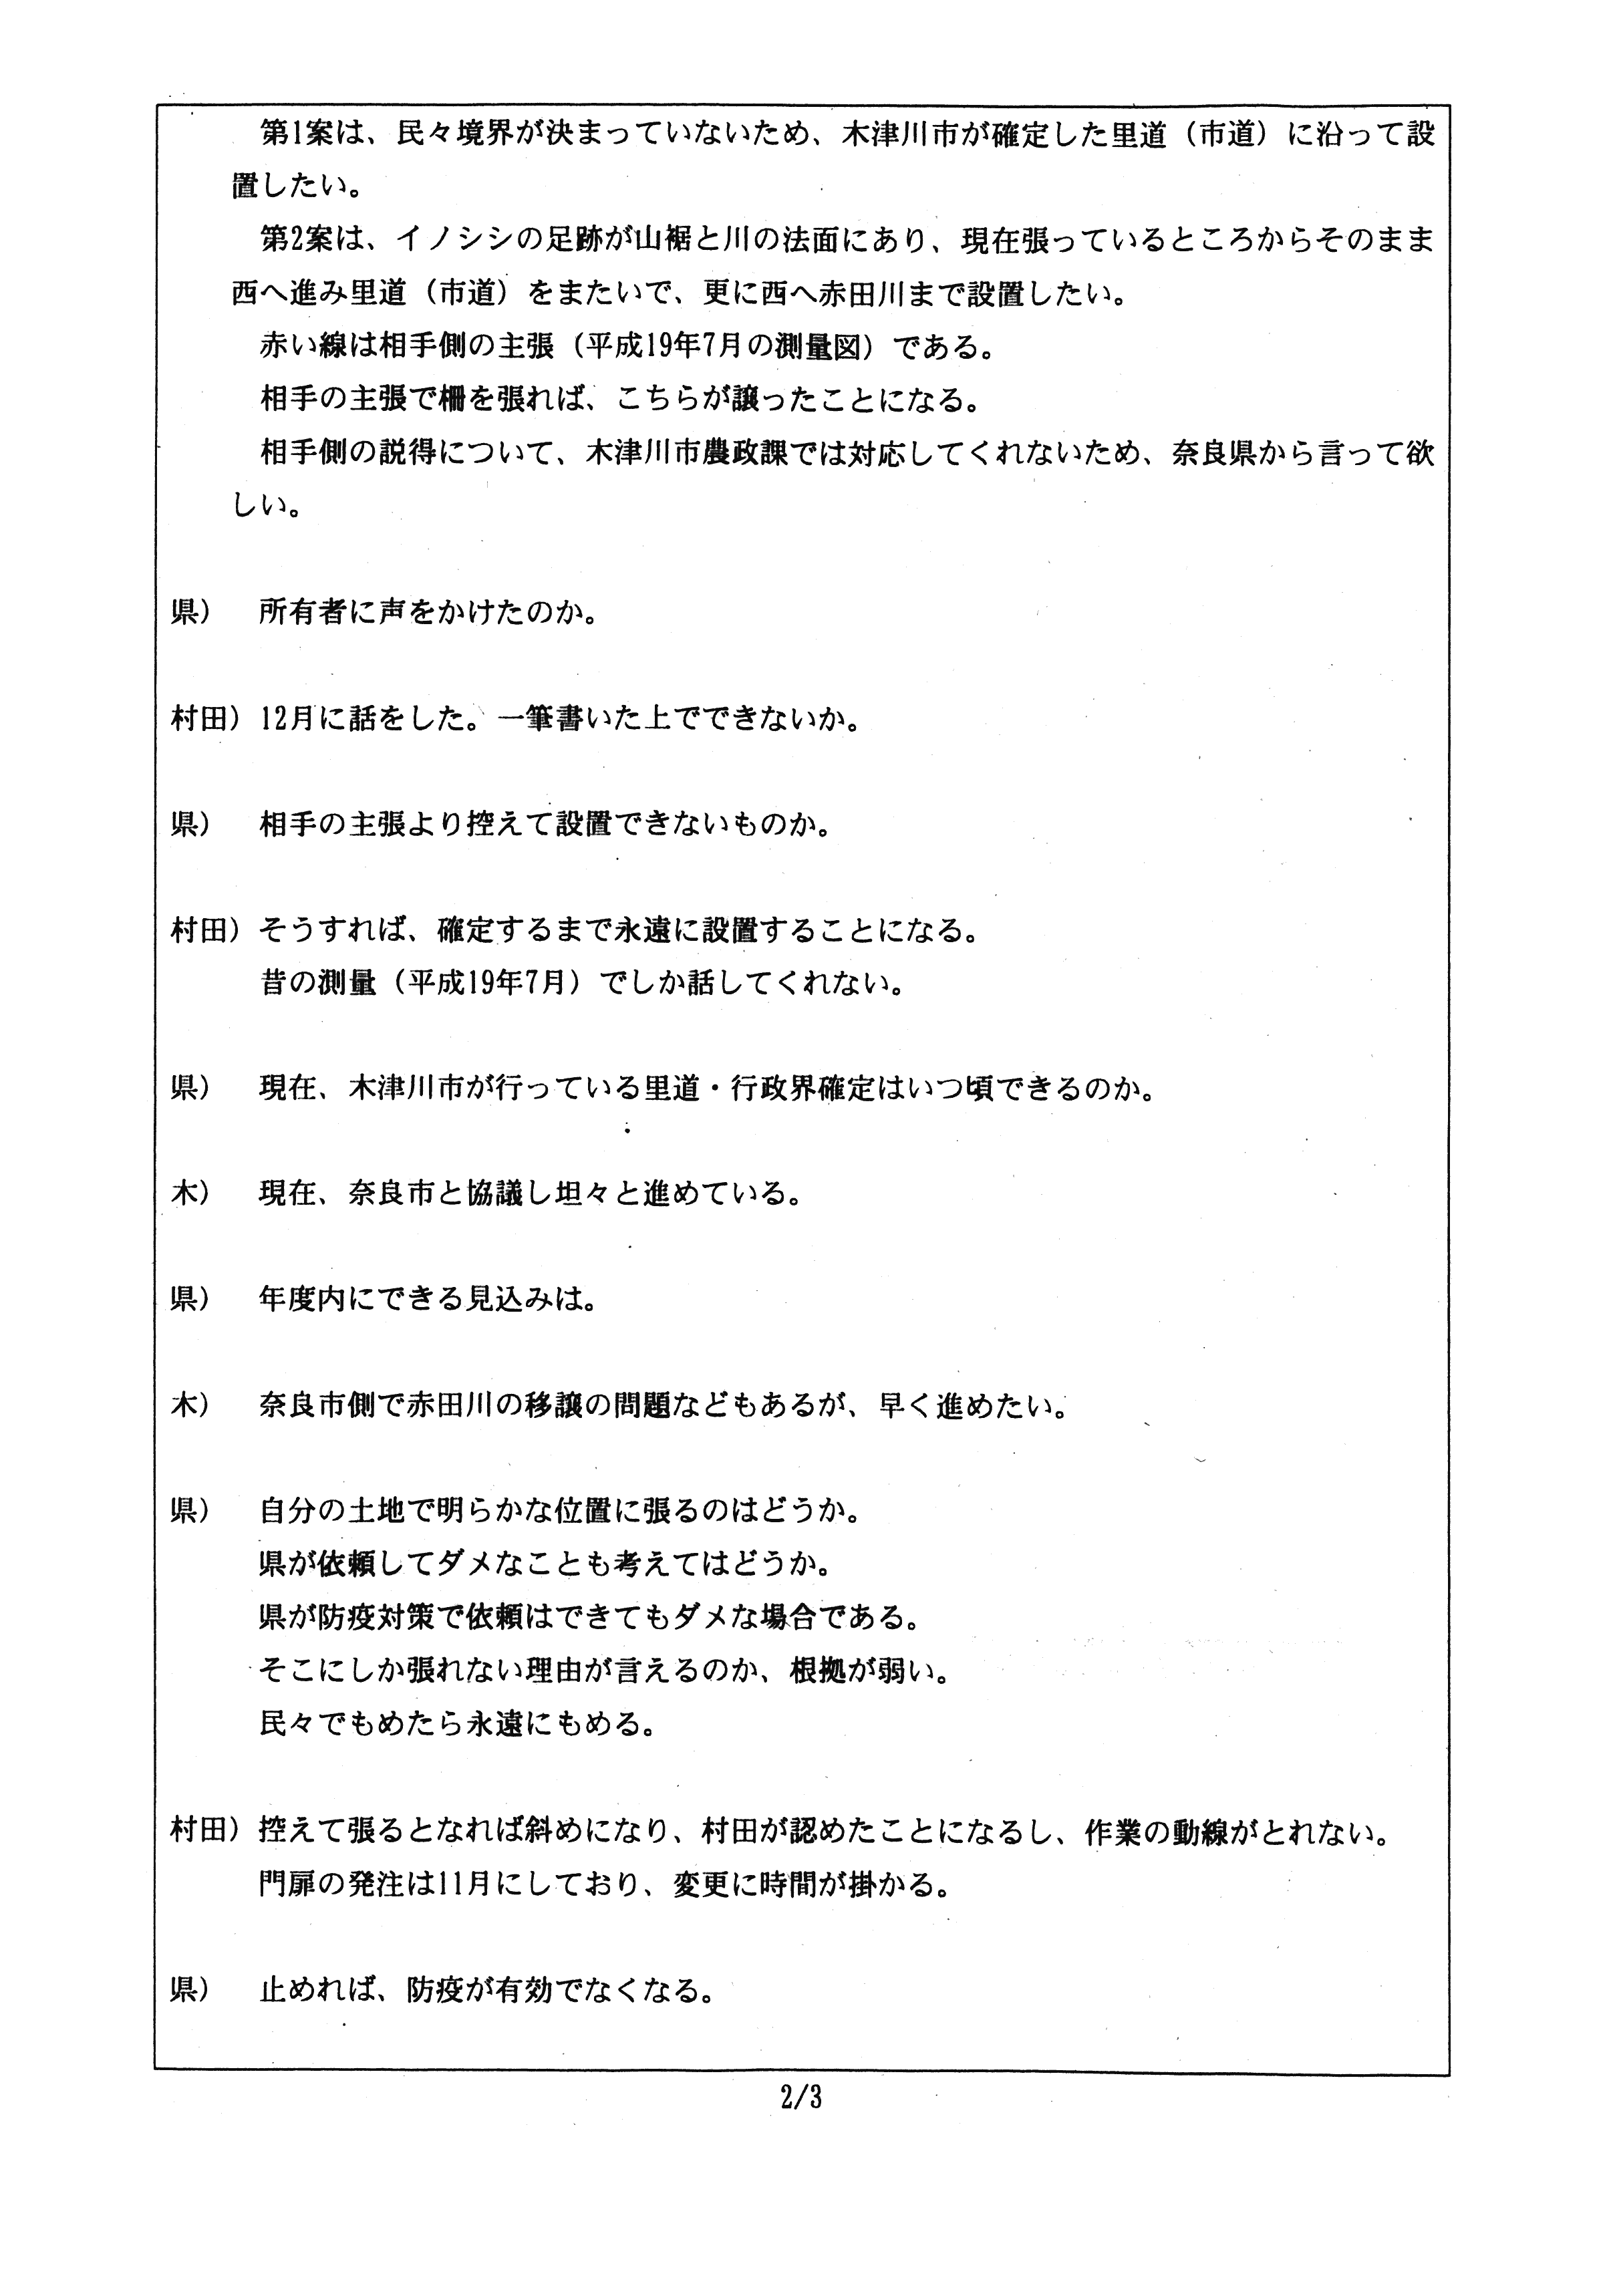 令和2年1月7日付連絡処理報告-村田商店に係る柵による衛星管理区域の囲い込みについて（協議）-02